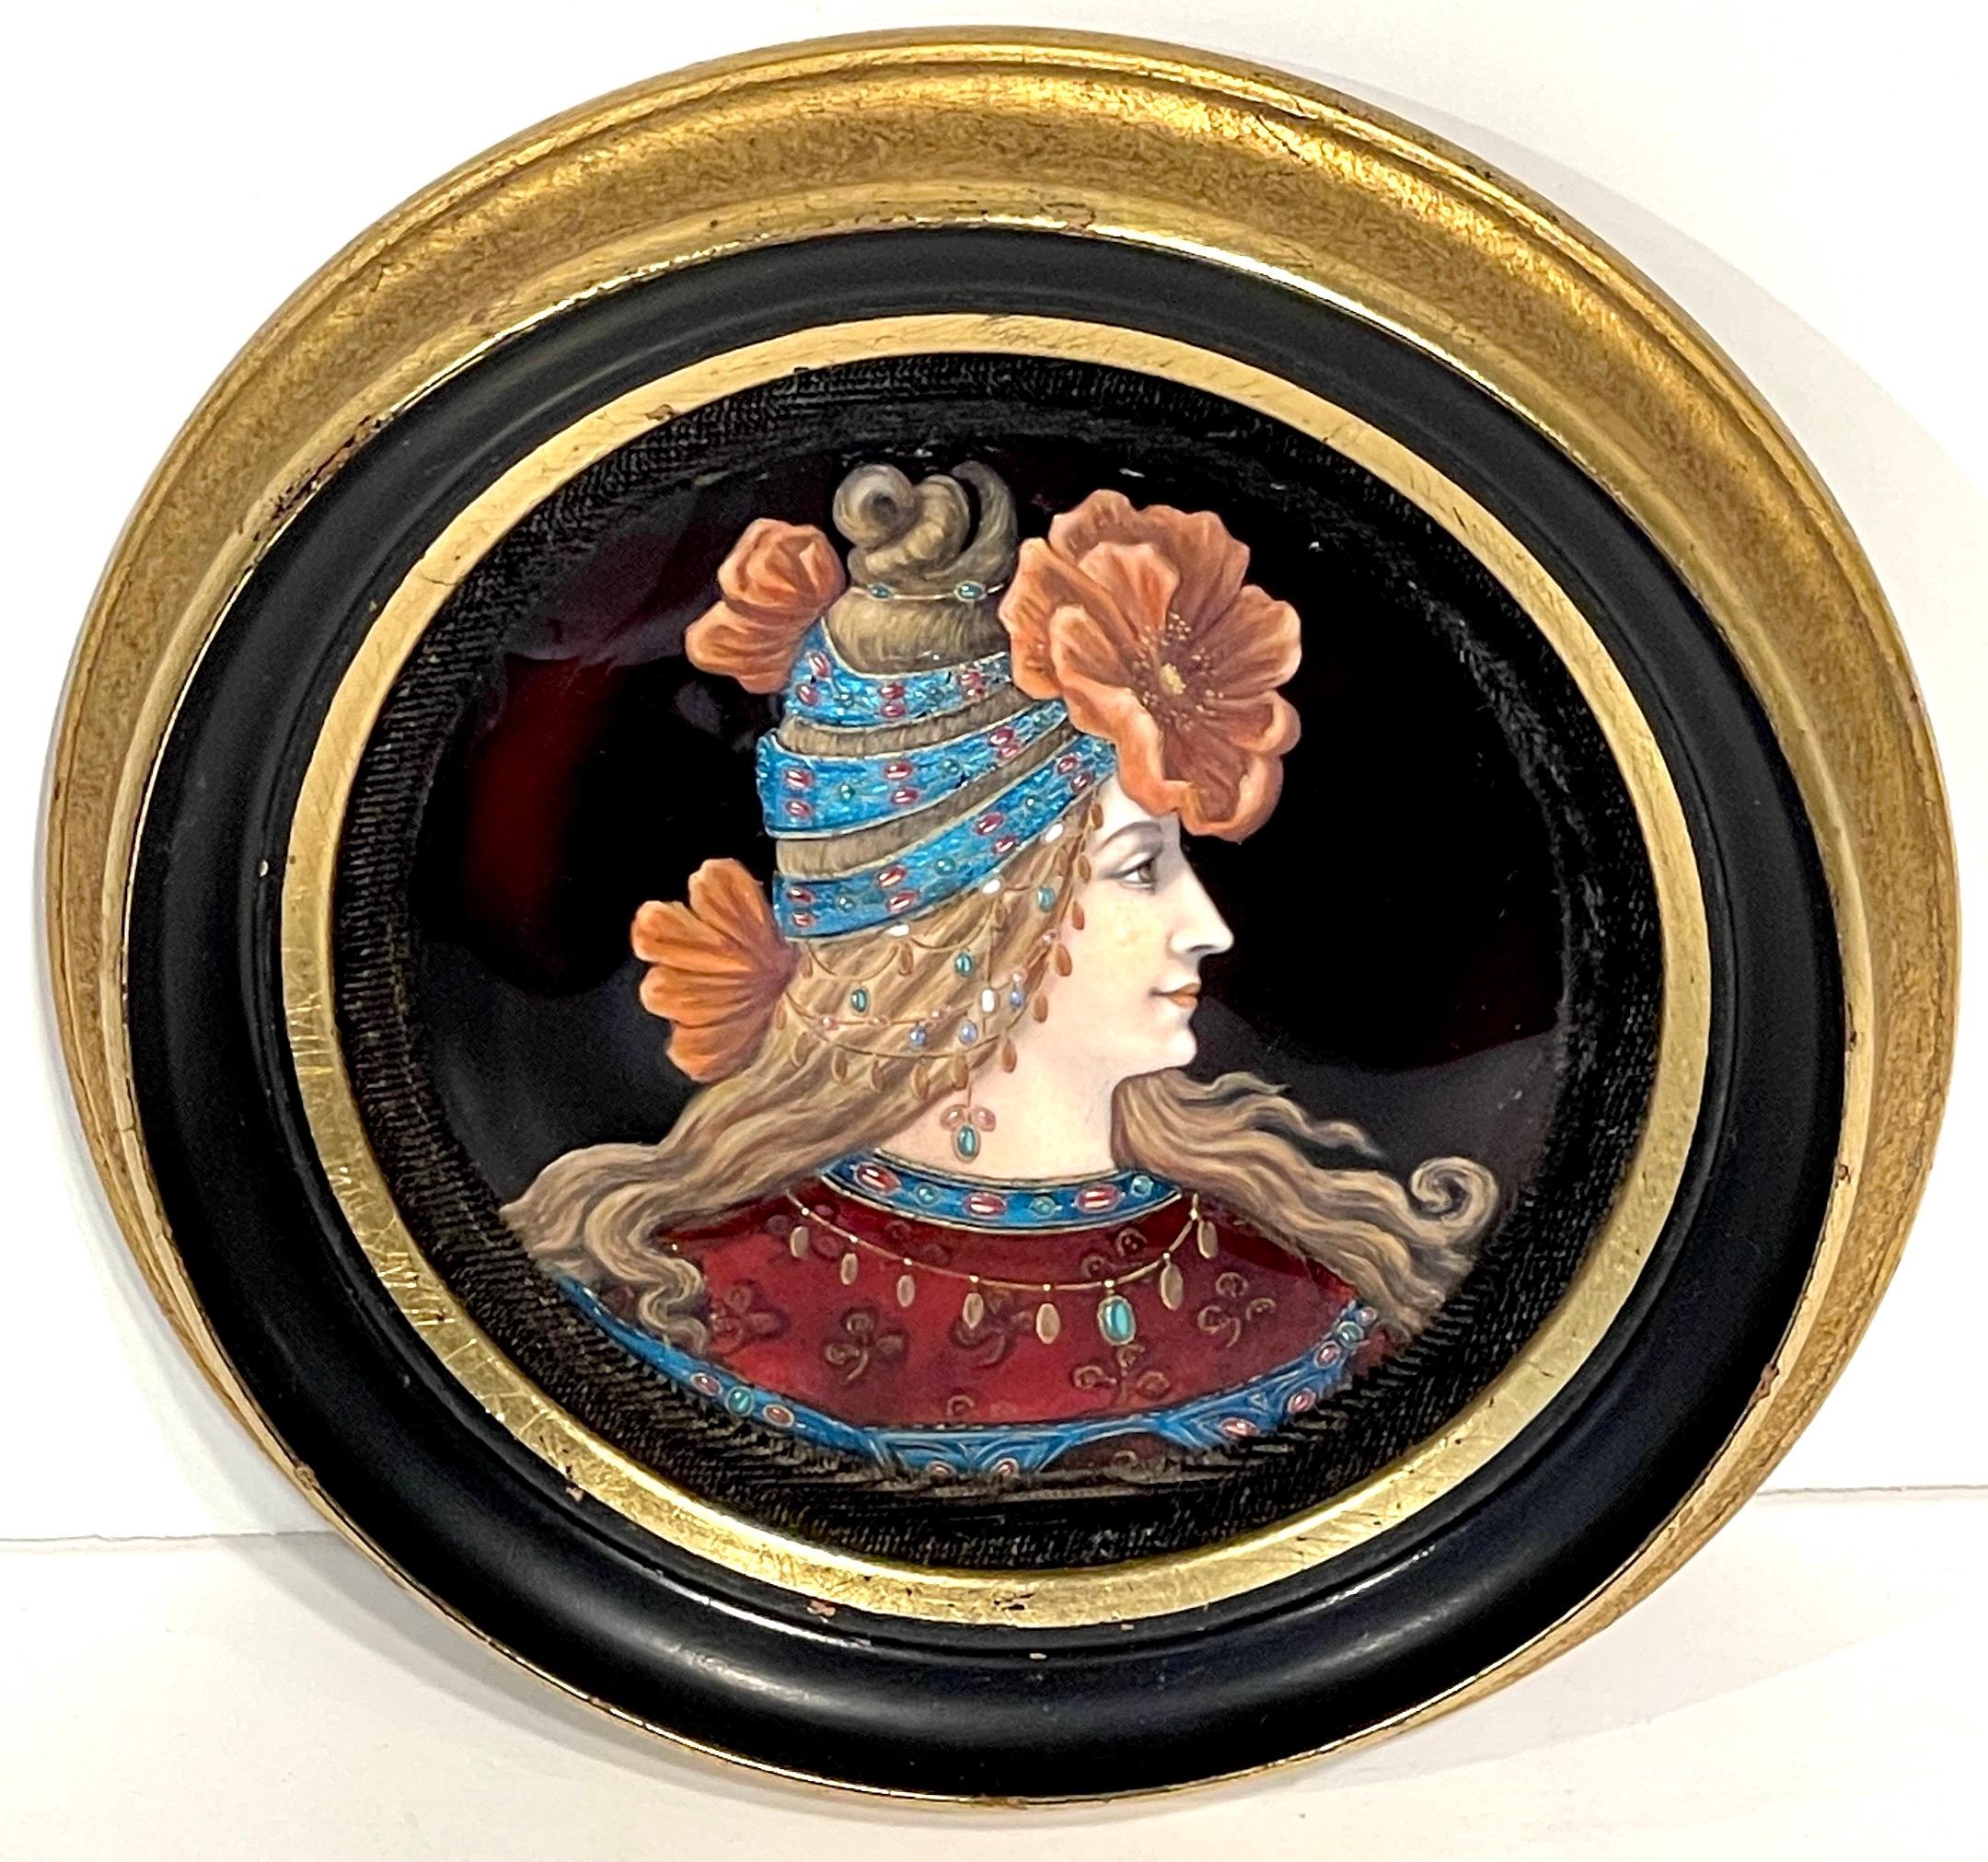 Exquis portrait d'une beauté Kokoshnik à fleurs en émail de Limoges
France, Vers 1900

Un exquis portrait en émail français de Limoges, vers les années 1900, représentant une beauté Art Nouveau parée d'une coiffe florale Kokoshnik. Cette œuvre d'art